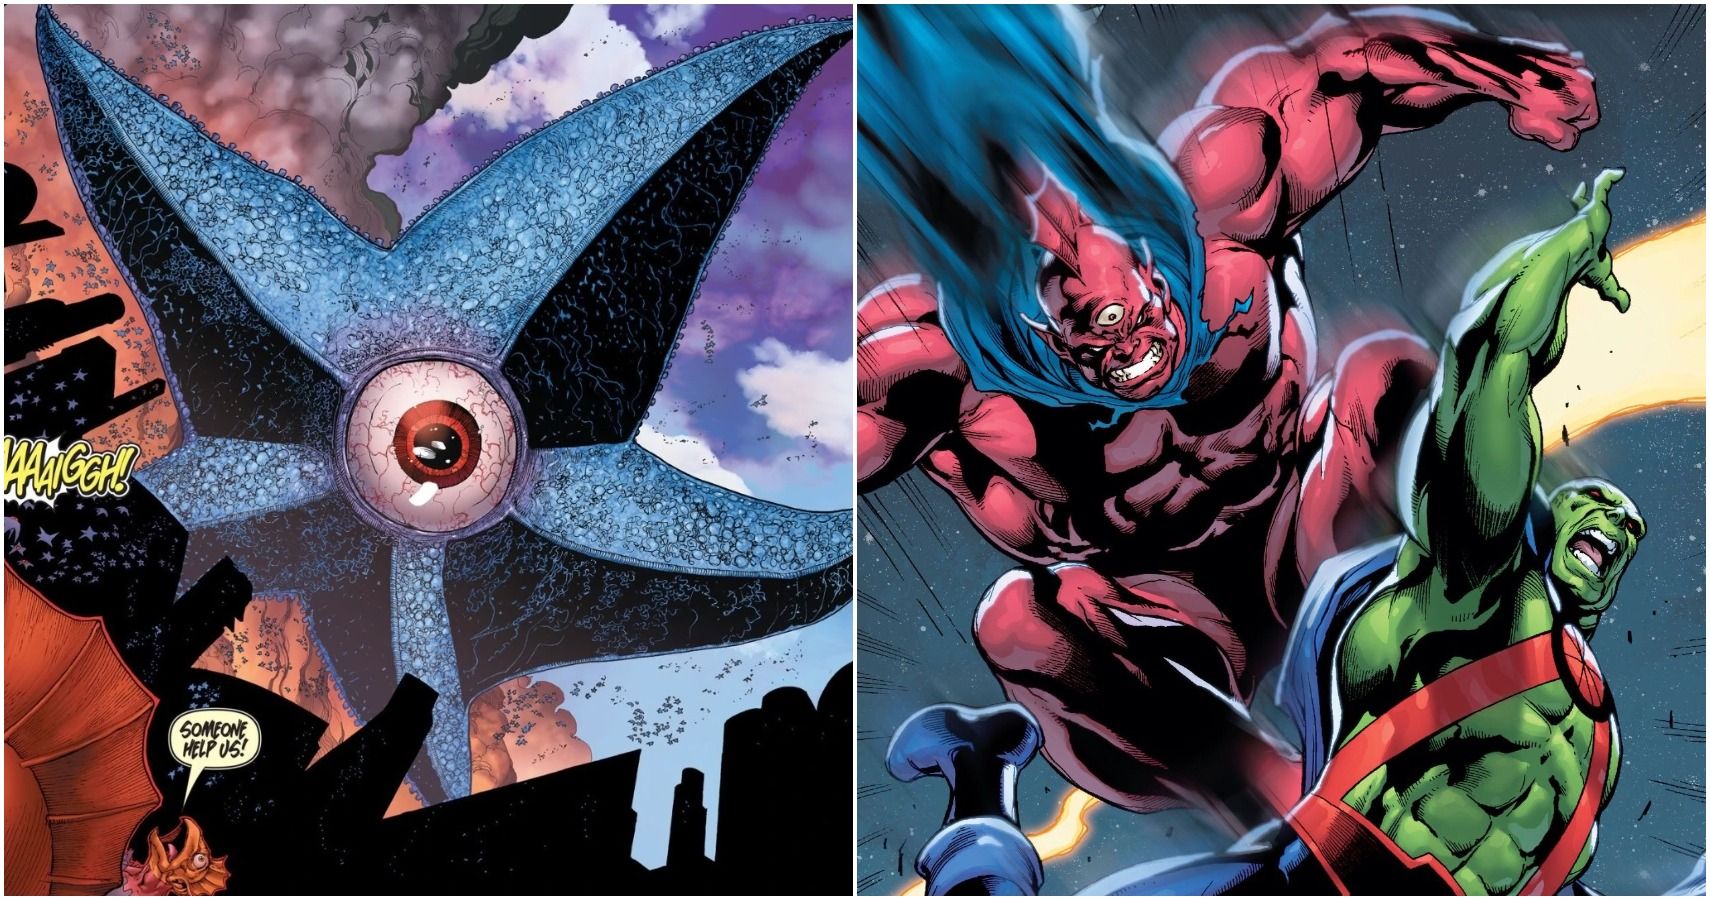 Justice League vs Starro figures